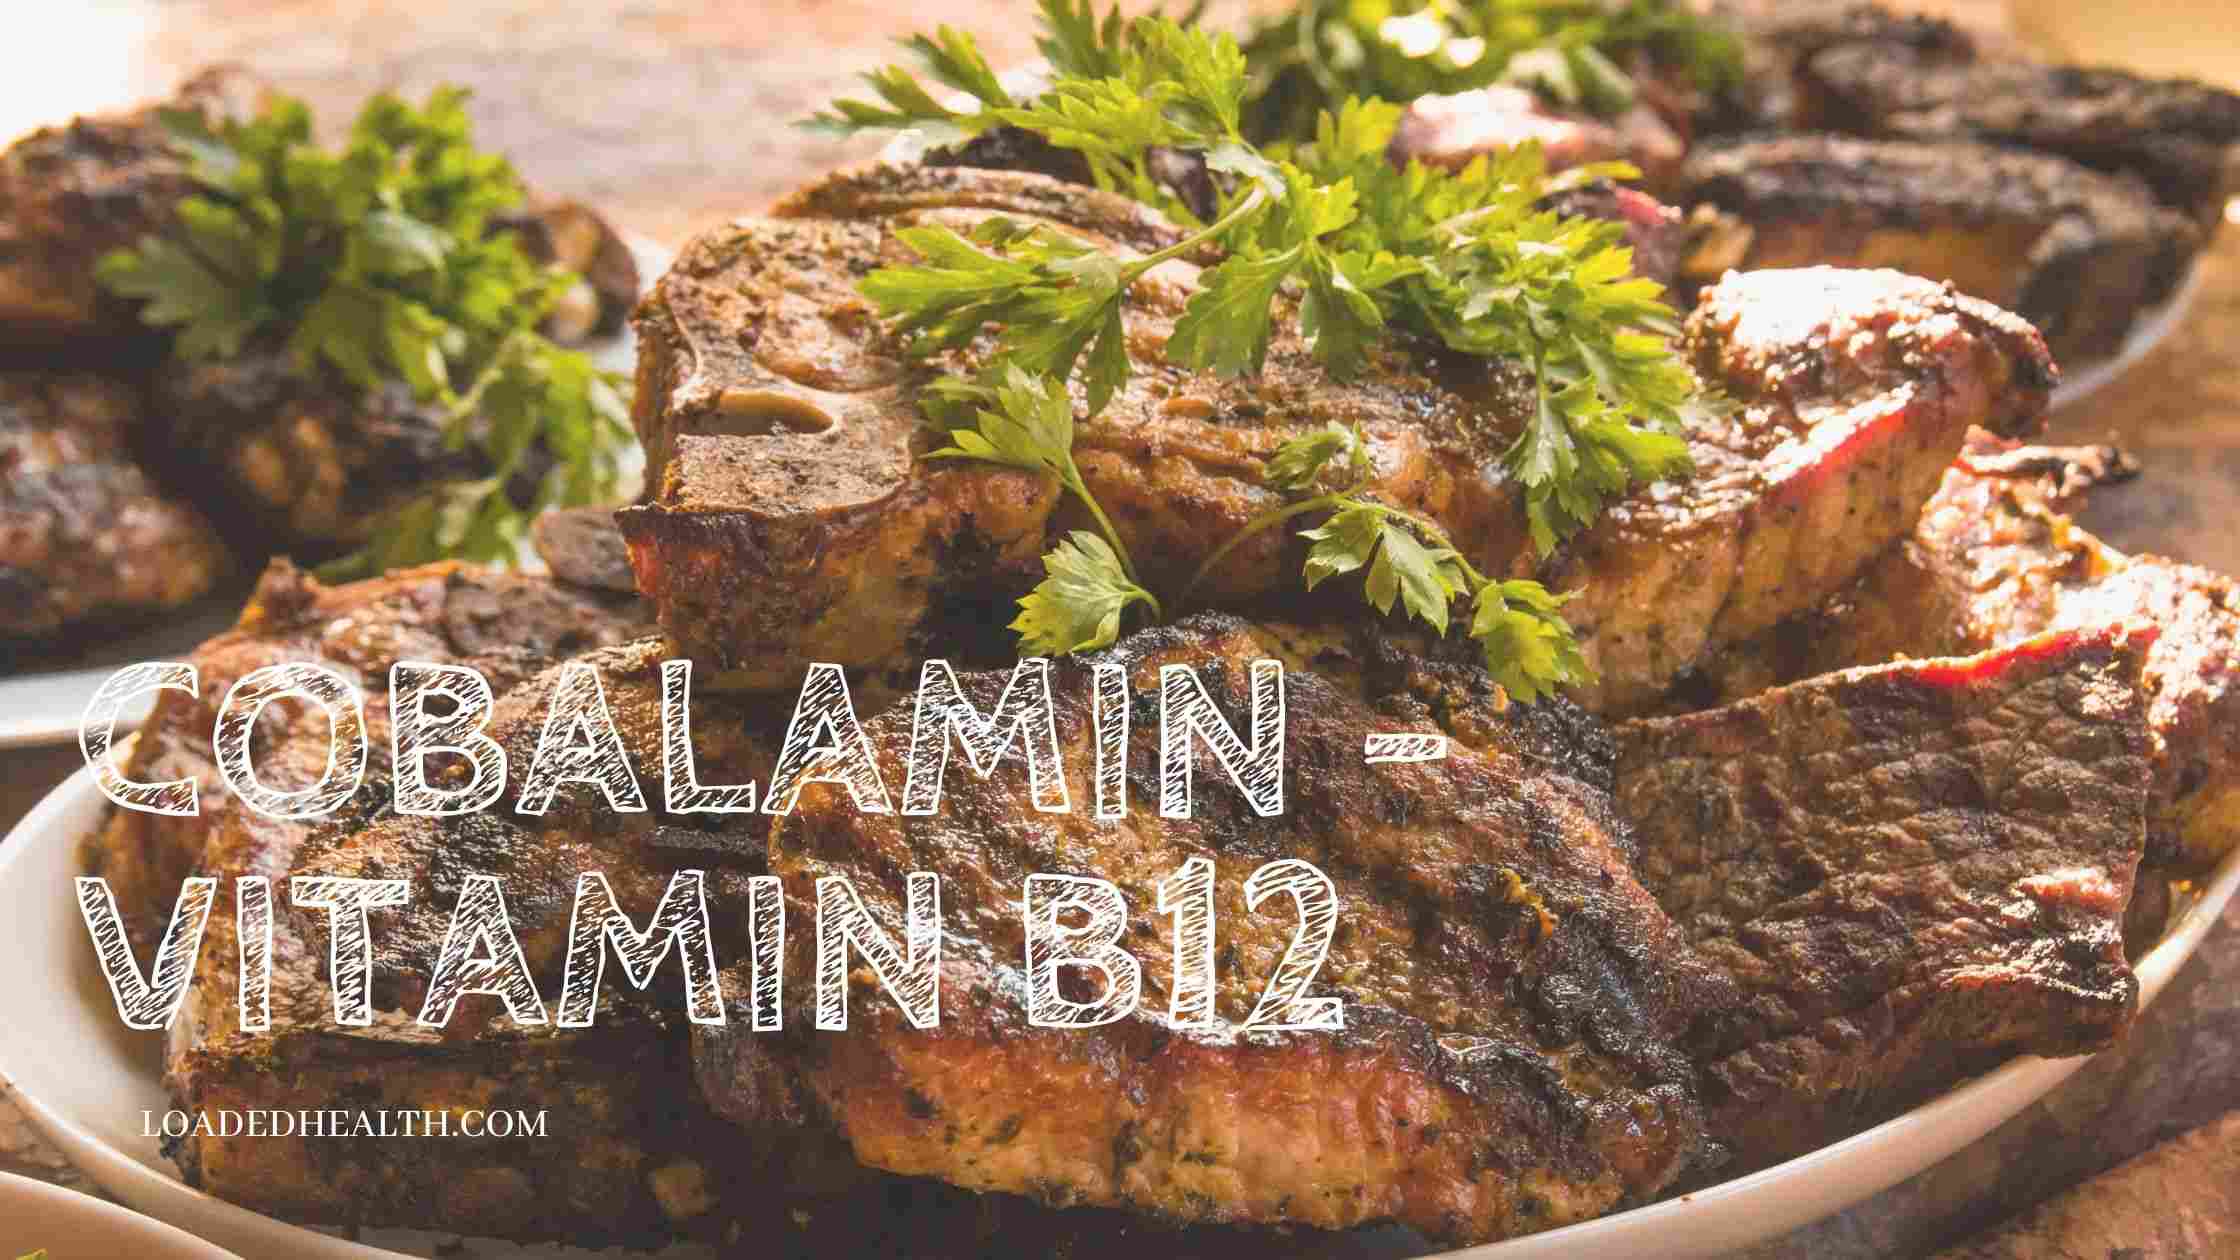 vitamin b12 - cobalamin